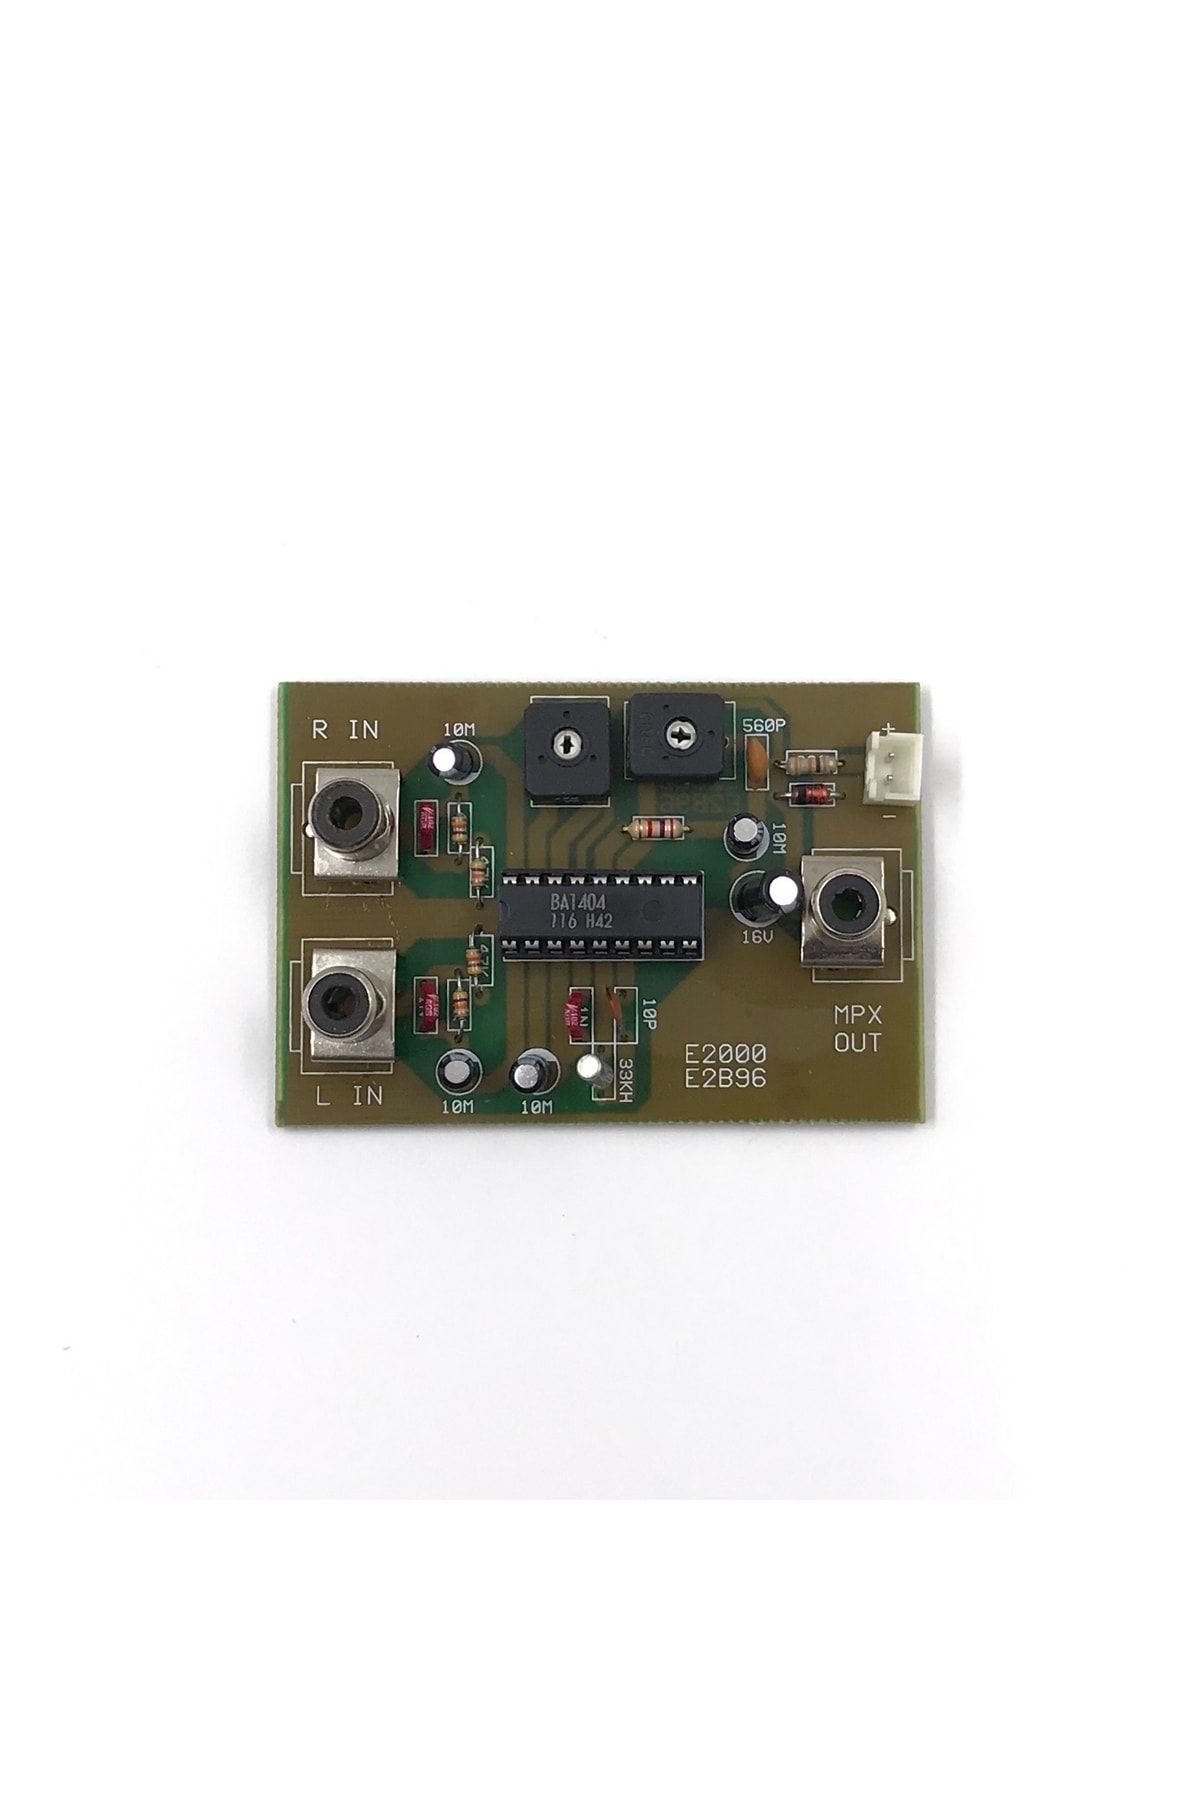 İar Stereo Encoder Devresi Mono Fm Vericiyi Stereo Kanala Dönüştürme